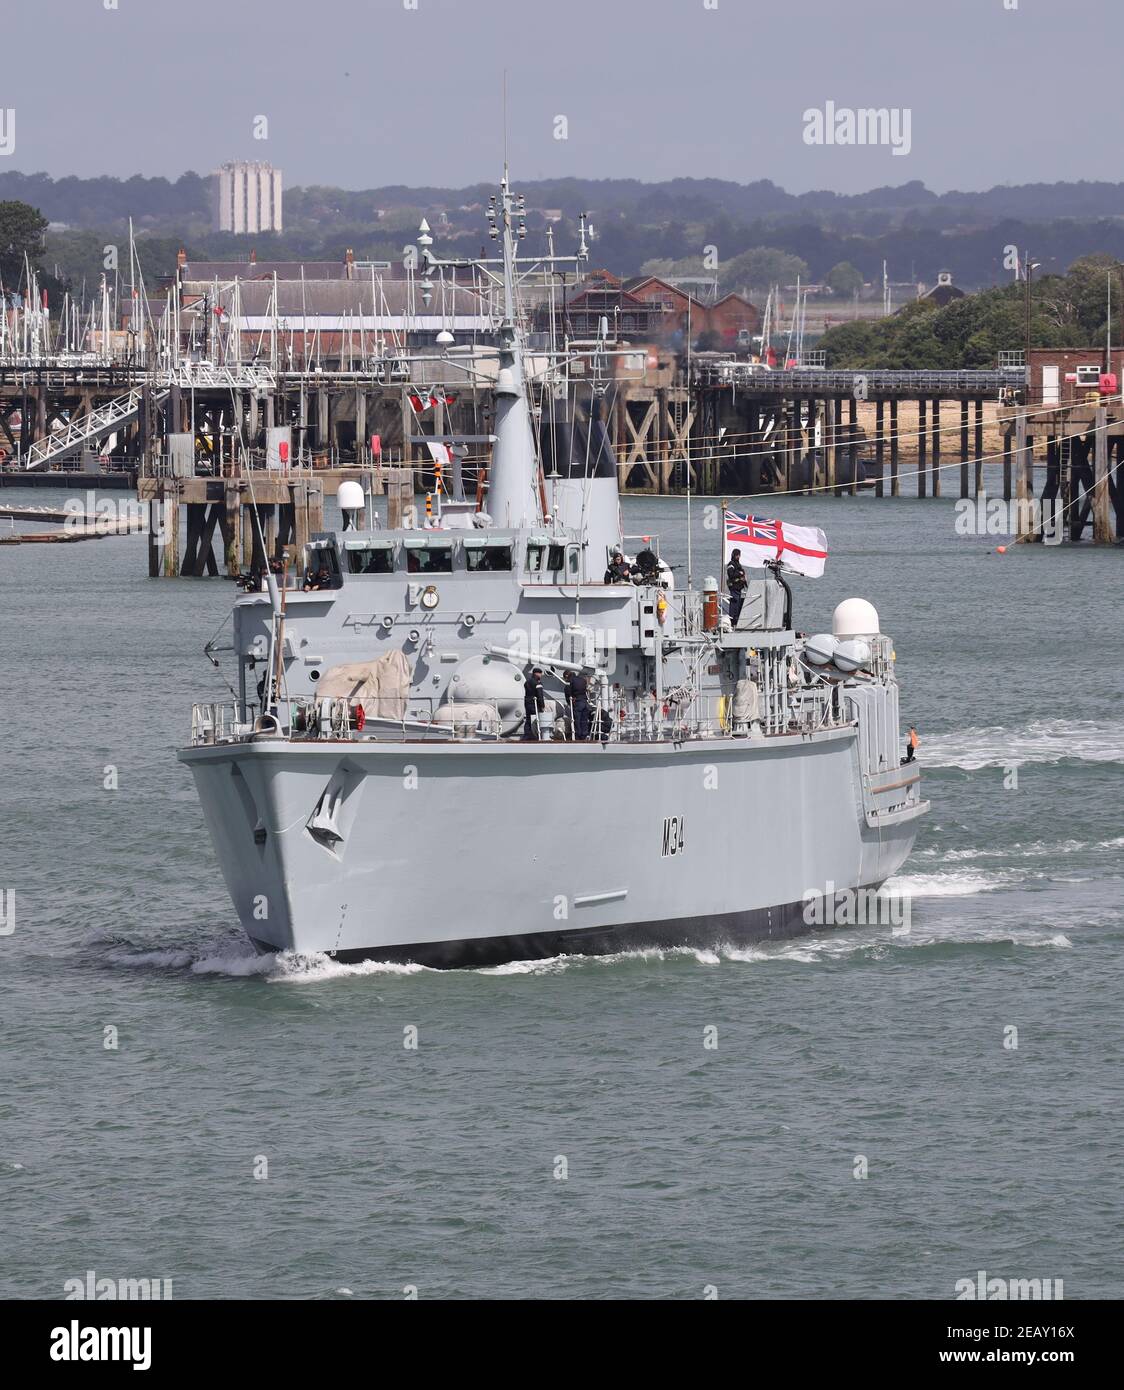 Le compteur de mines de la classe de chasse de la Marine royale mesure le navire HMS MIDDLETON met en mer pour la première fois après un Remise en place majeure dans la base navale Banque D'Images